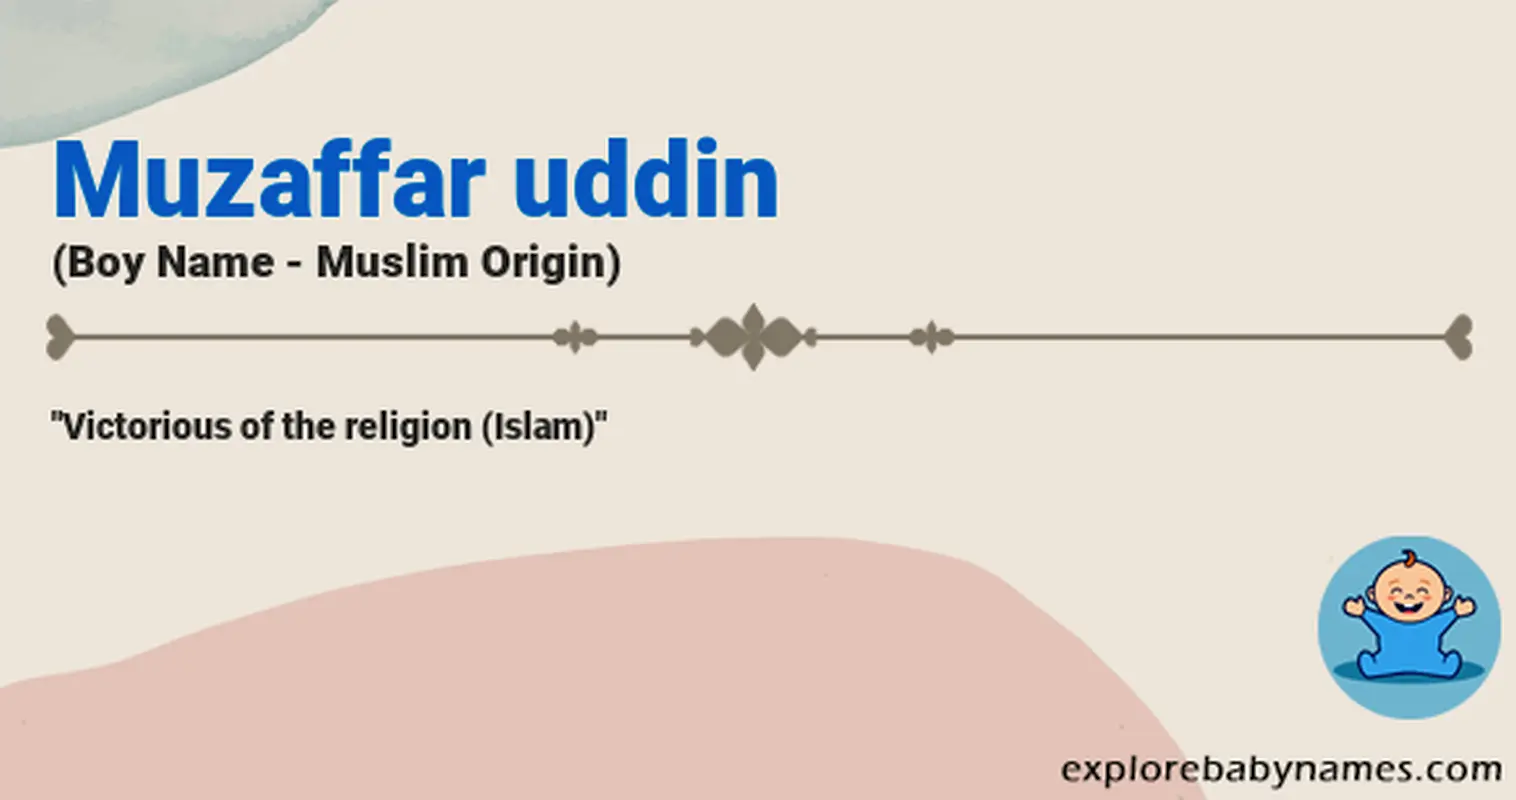 Meaning of Muzaffar uddin